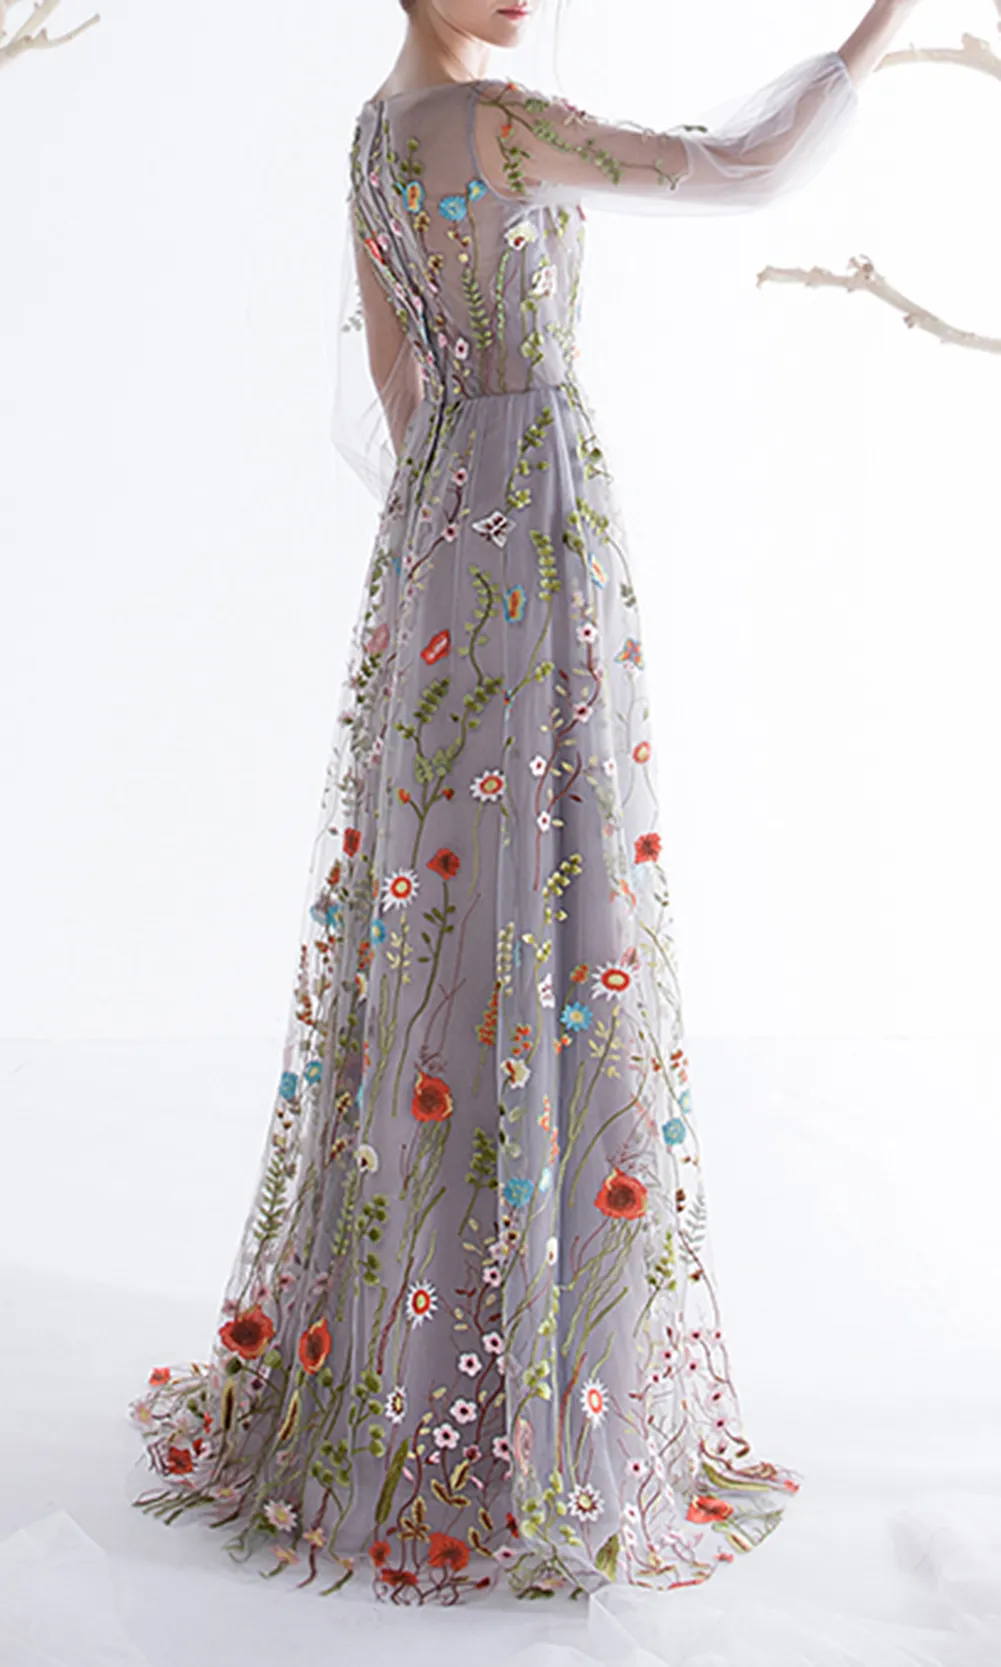 Dobelove Femmes manches longues robes de bal de bal 2019 branchement floral broderie A-ligne robes de soirée robes de guiche de fête formelle robe de pageant